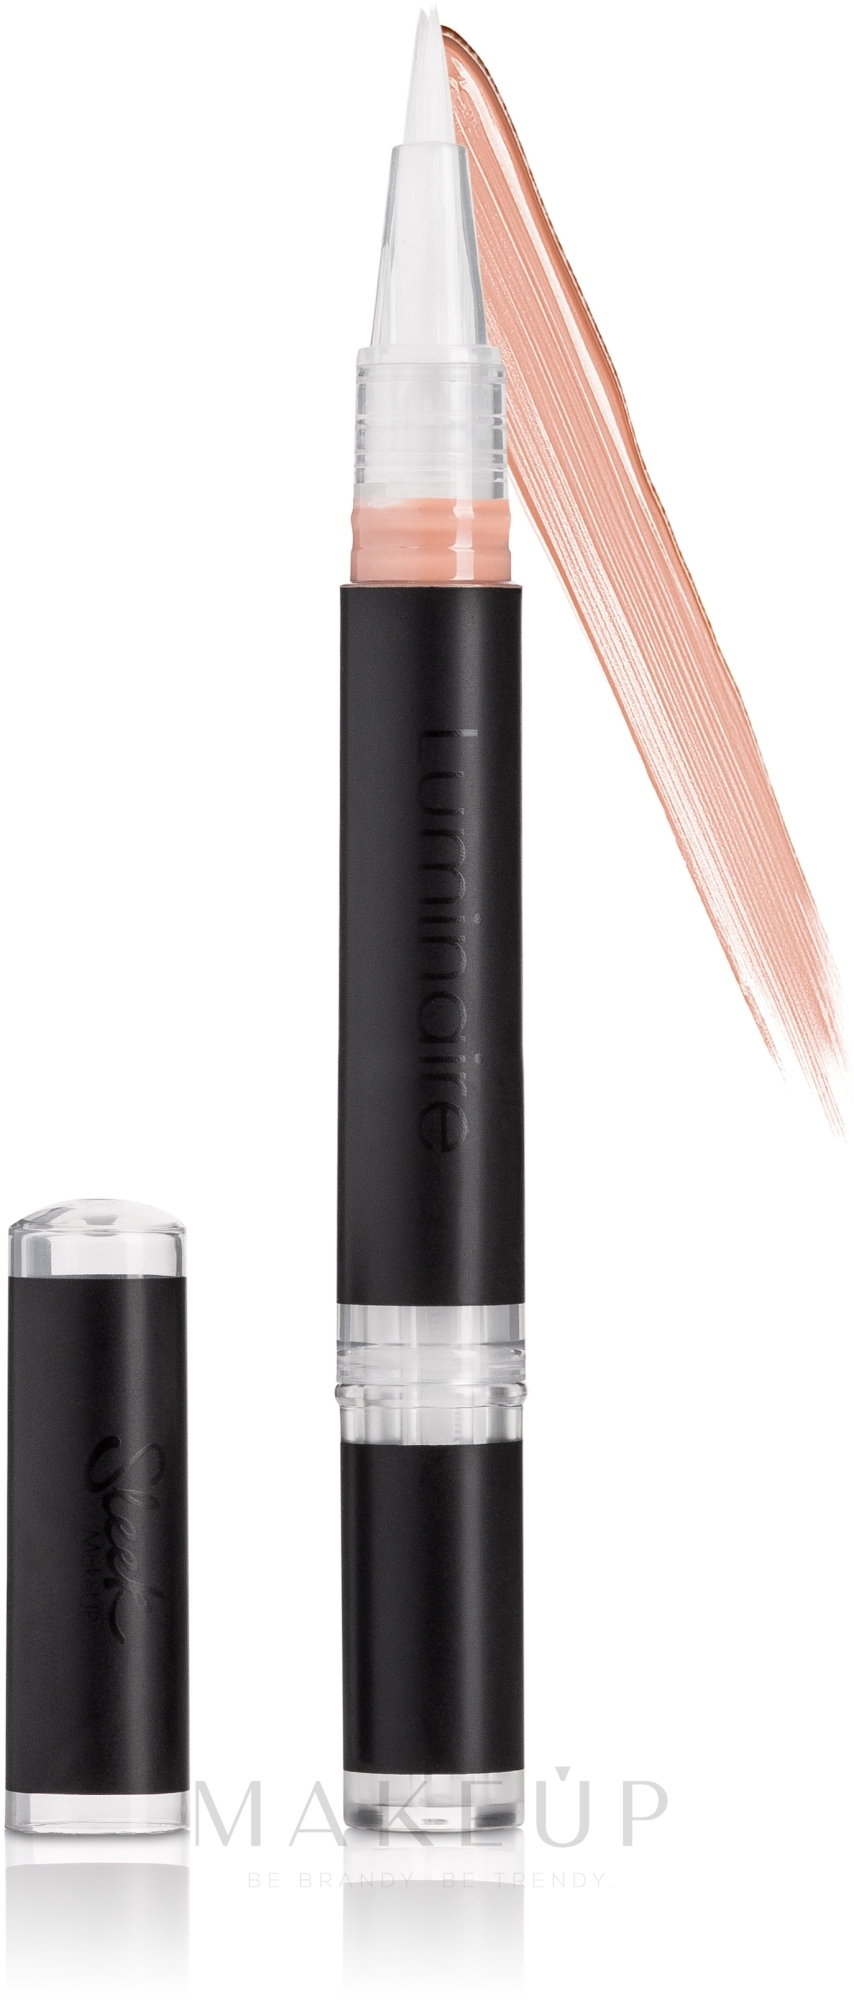 Make-up Concealer - Sleek MakeUP Luminaire Highlighting Concealer — Bild L01